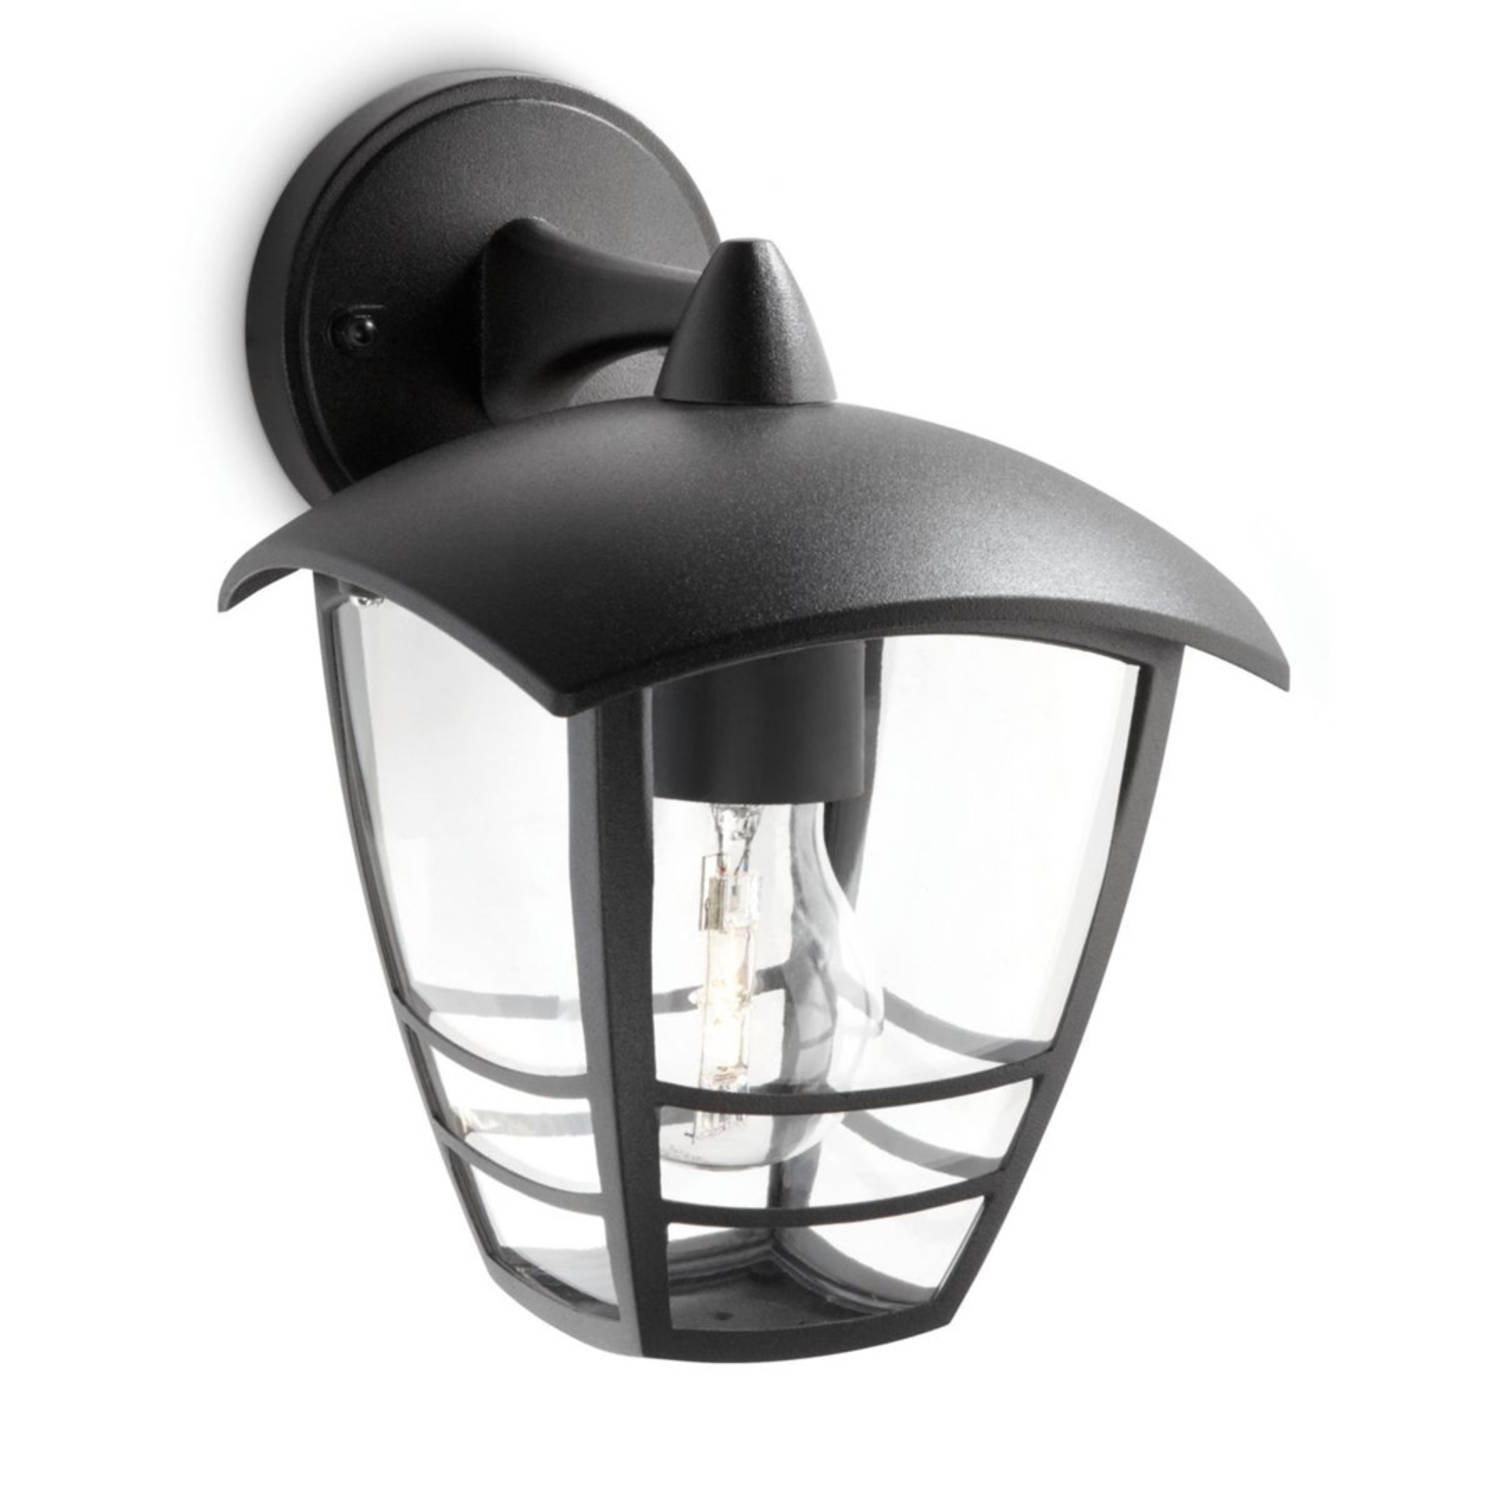 Philips mygarden creek wandlamp 230 v 60 w e27 zwart